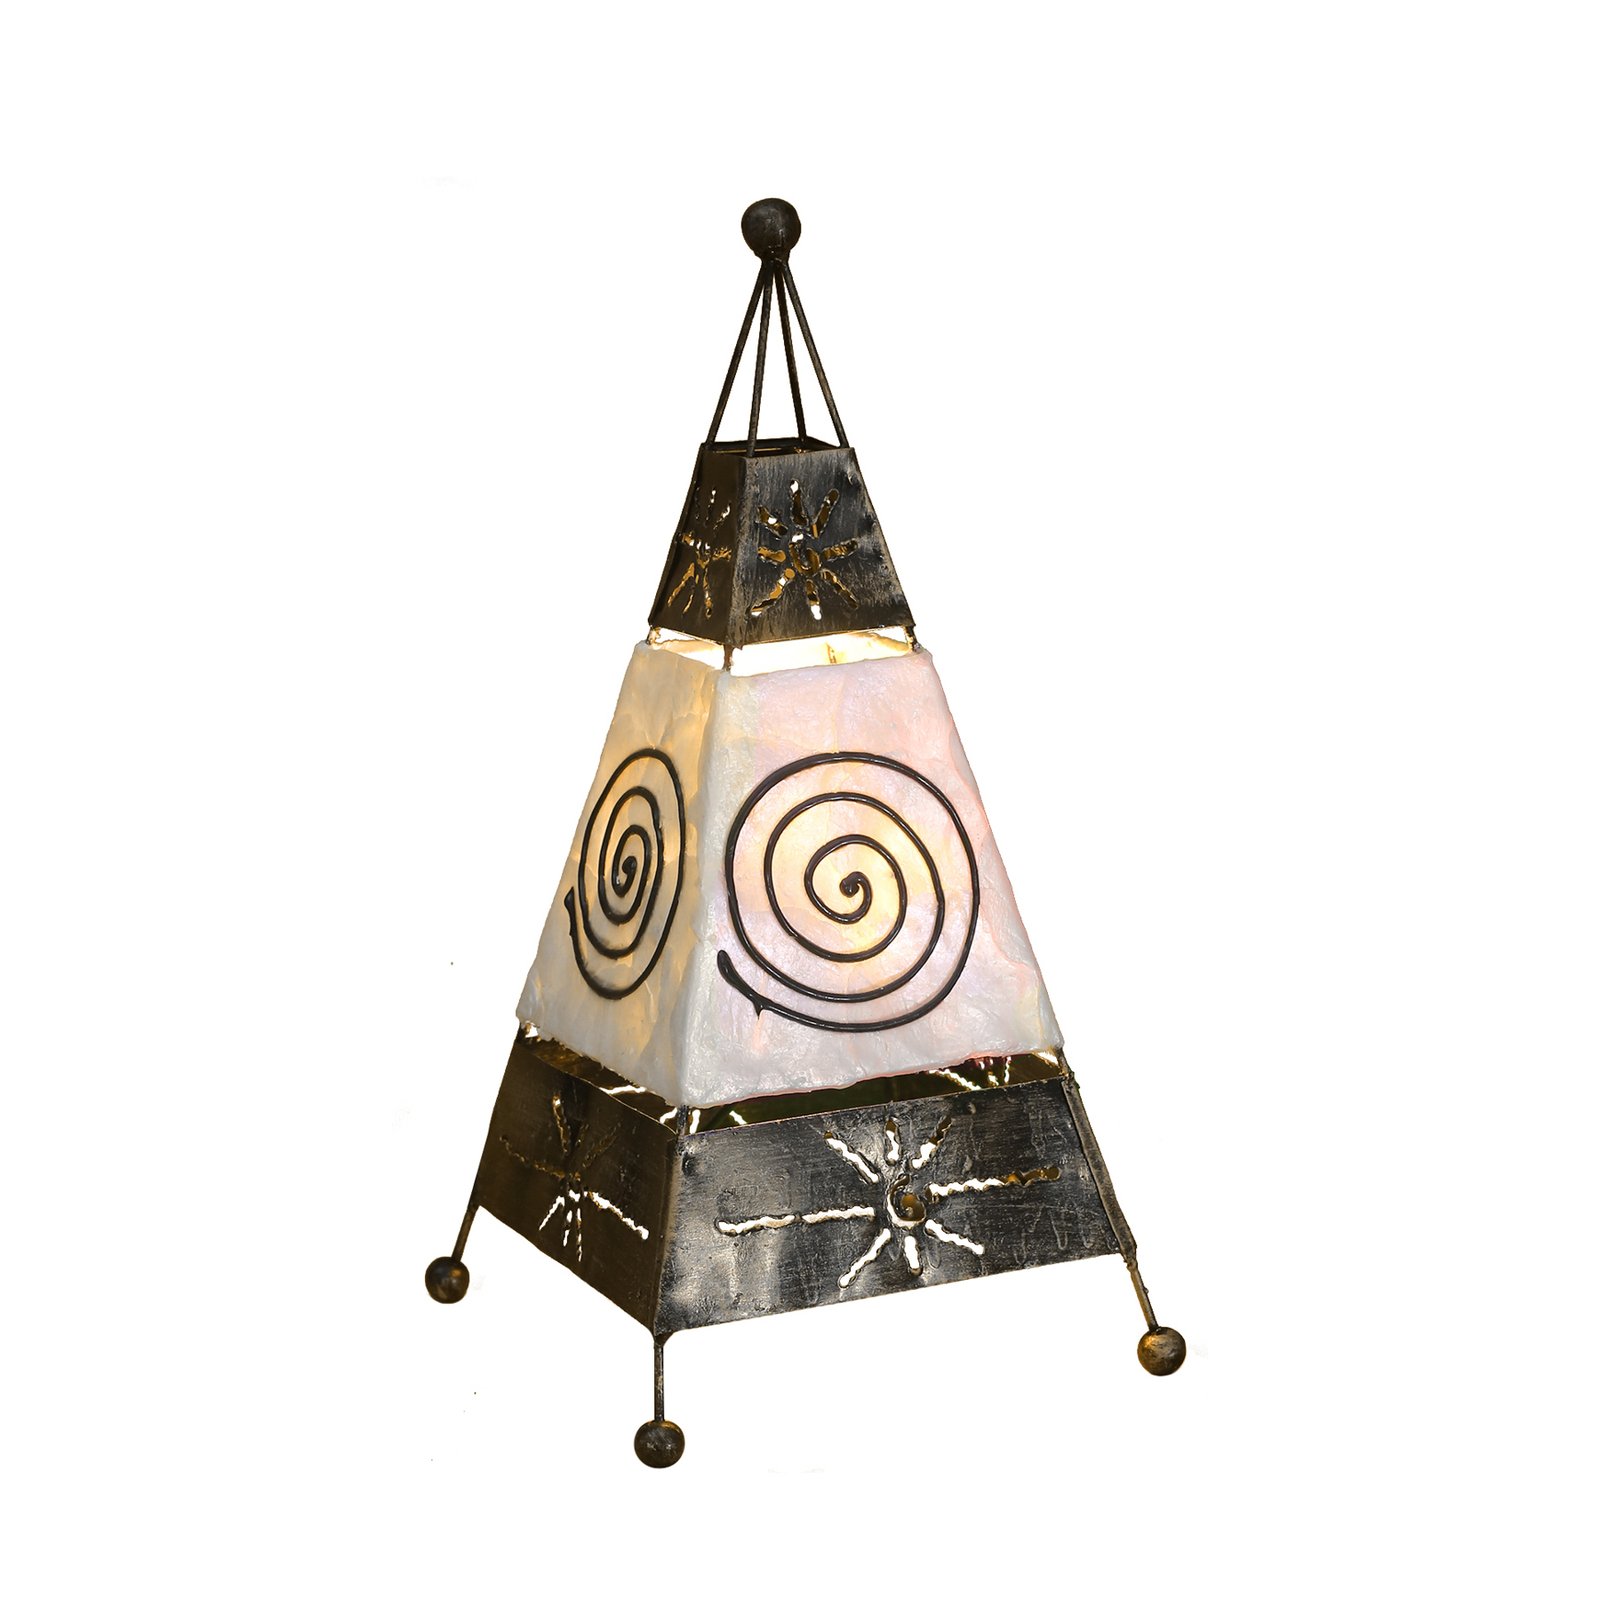 Lampa stołowa Carlo z motywem spirali i słońca